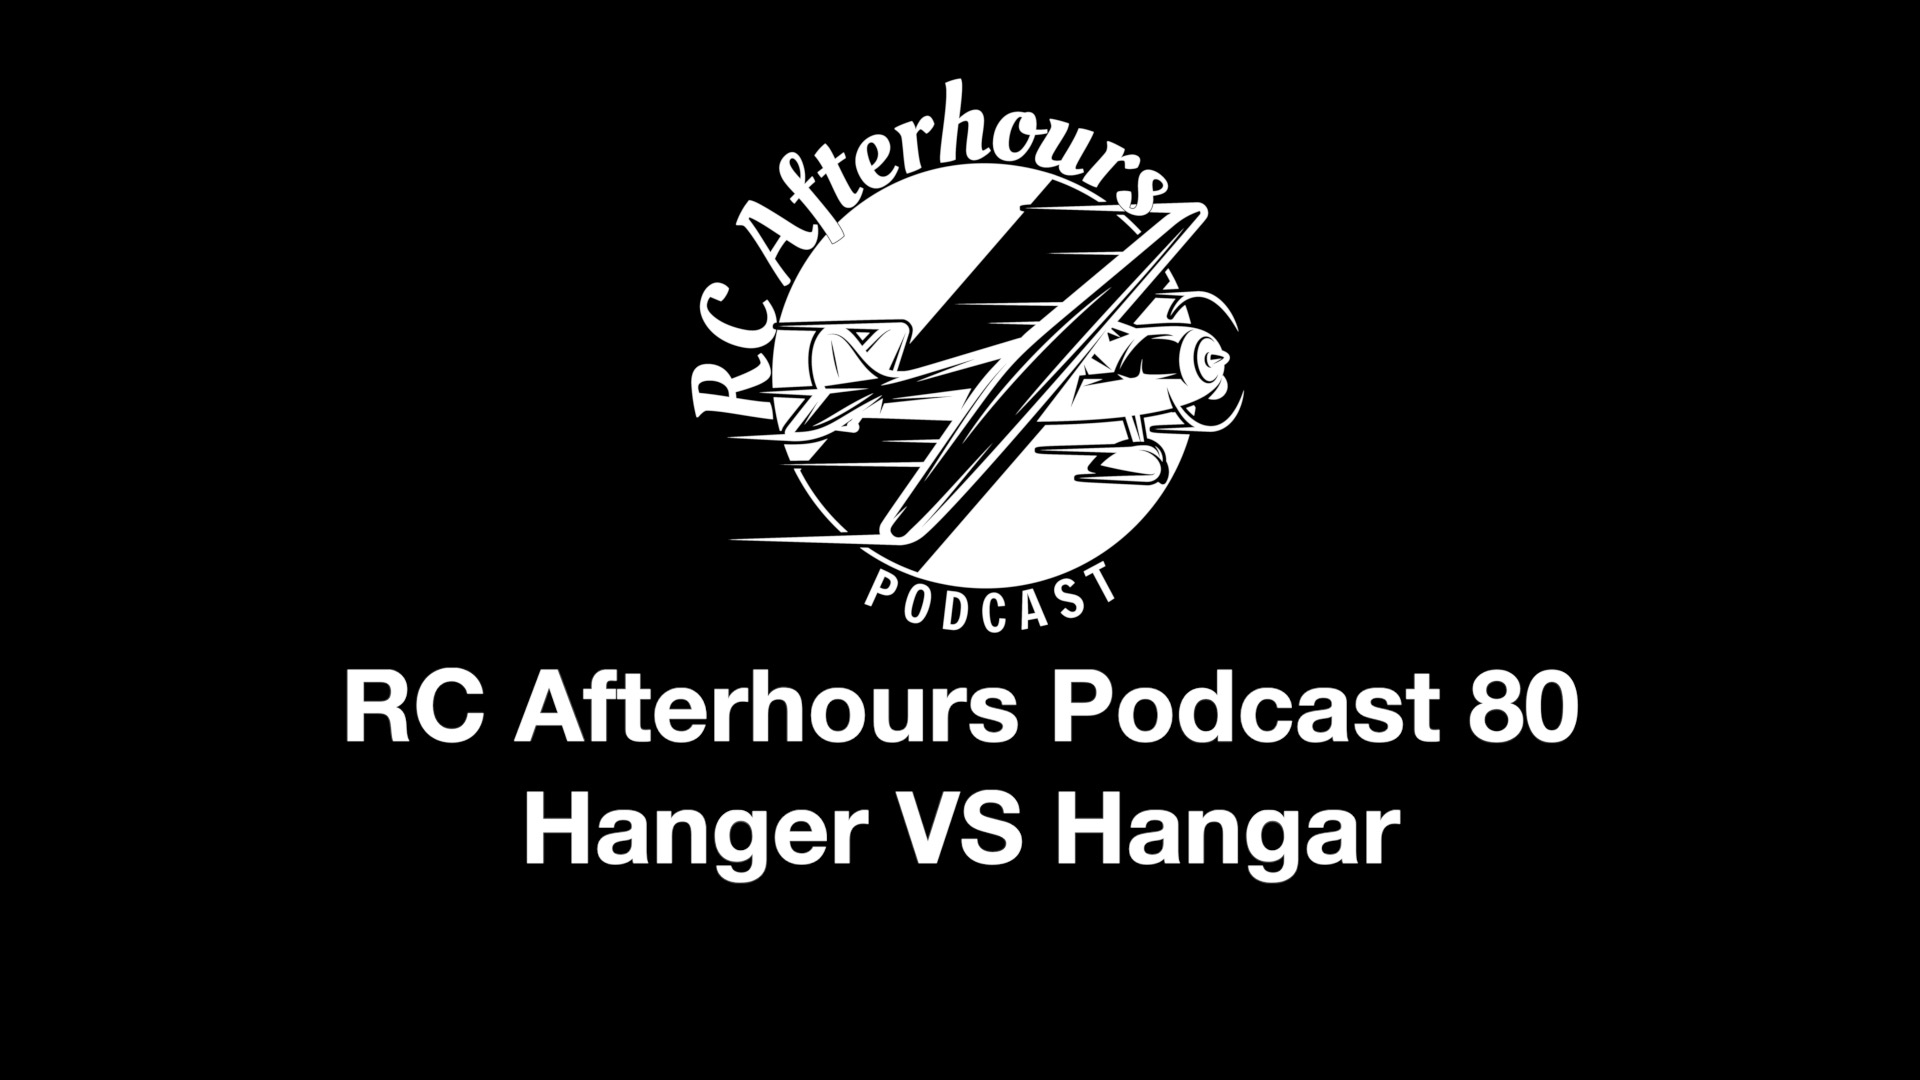 RC Afterhours Podcast 80 - It's Hanger vs Hangar